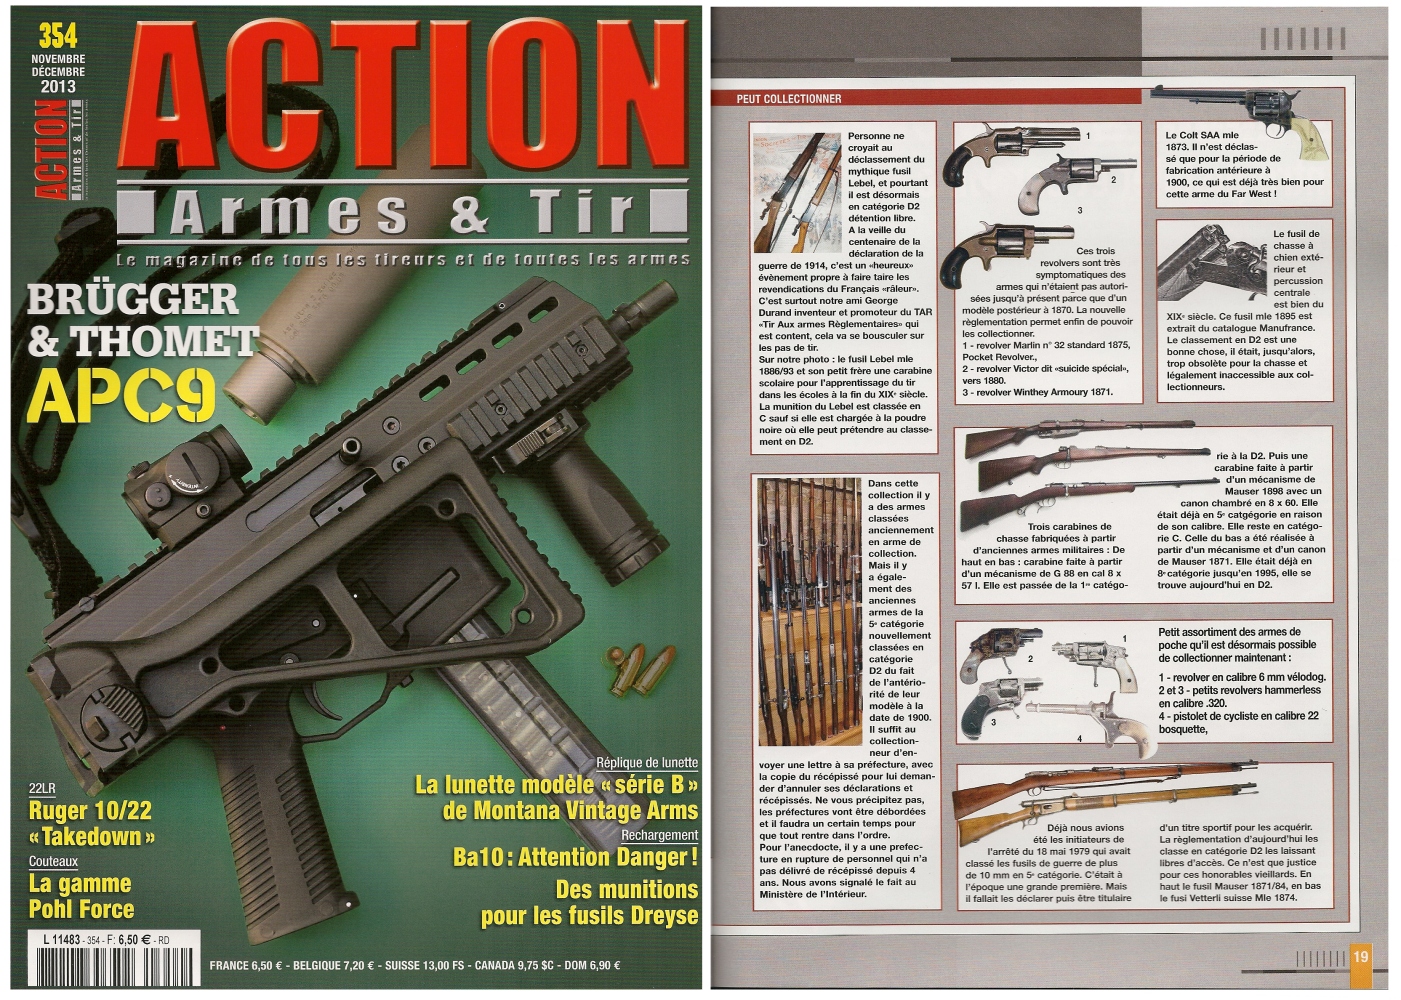 La nouvelle réglementation des armes a fait l’objet d’un article publié sur 8 pages dans le magazine Action Armes & Tir n° 354 (novembre-décembre 2013)